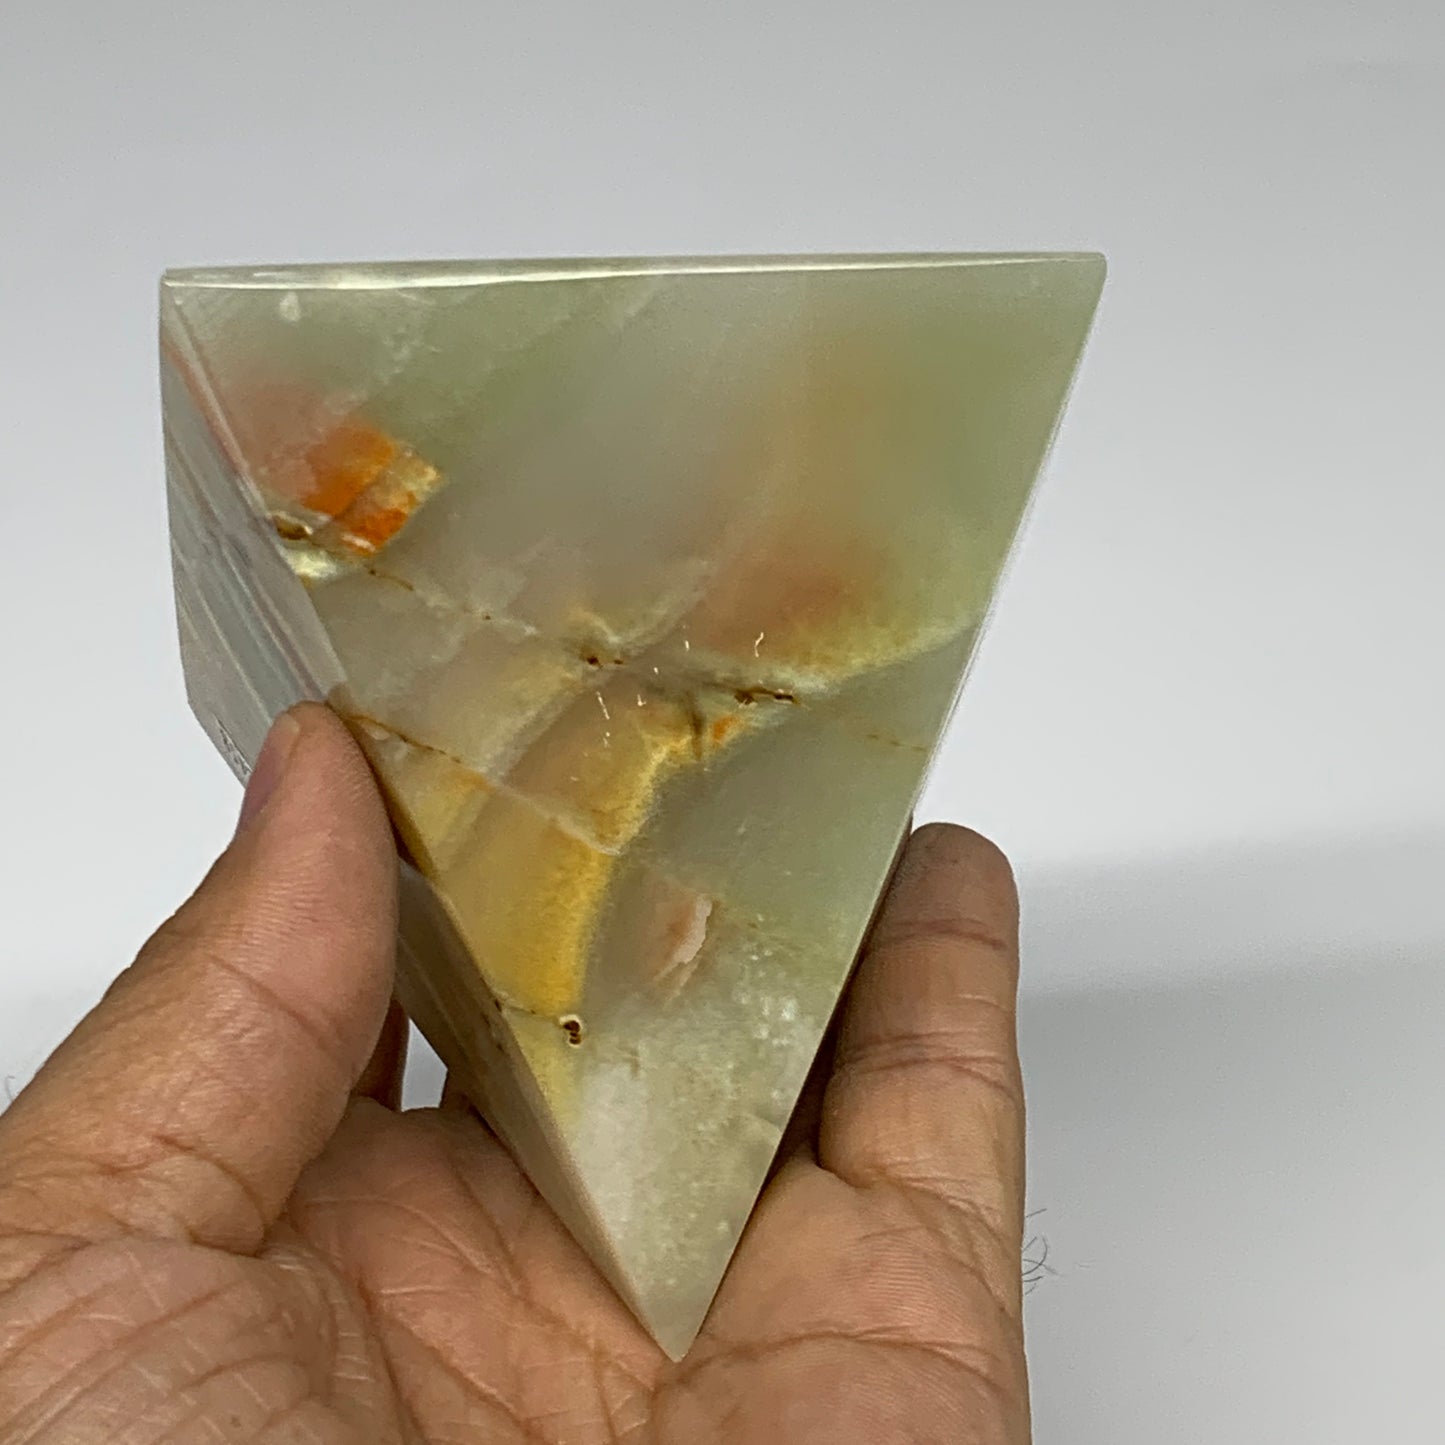 0.91 lbs, 3"x2.9"x2.9", Green Onyx Pyramid Gemstone Crystal, B32458